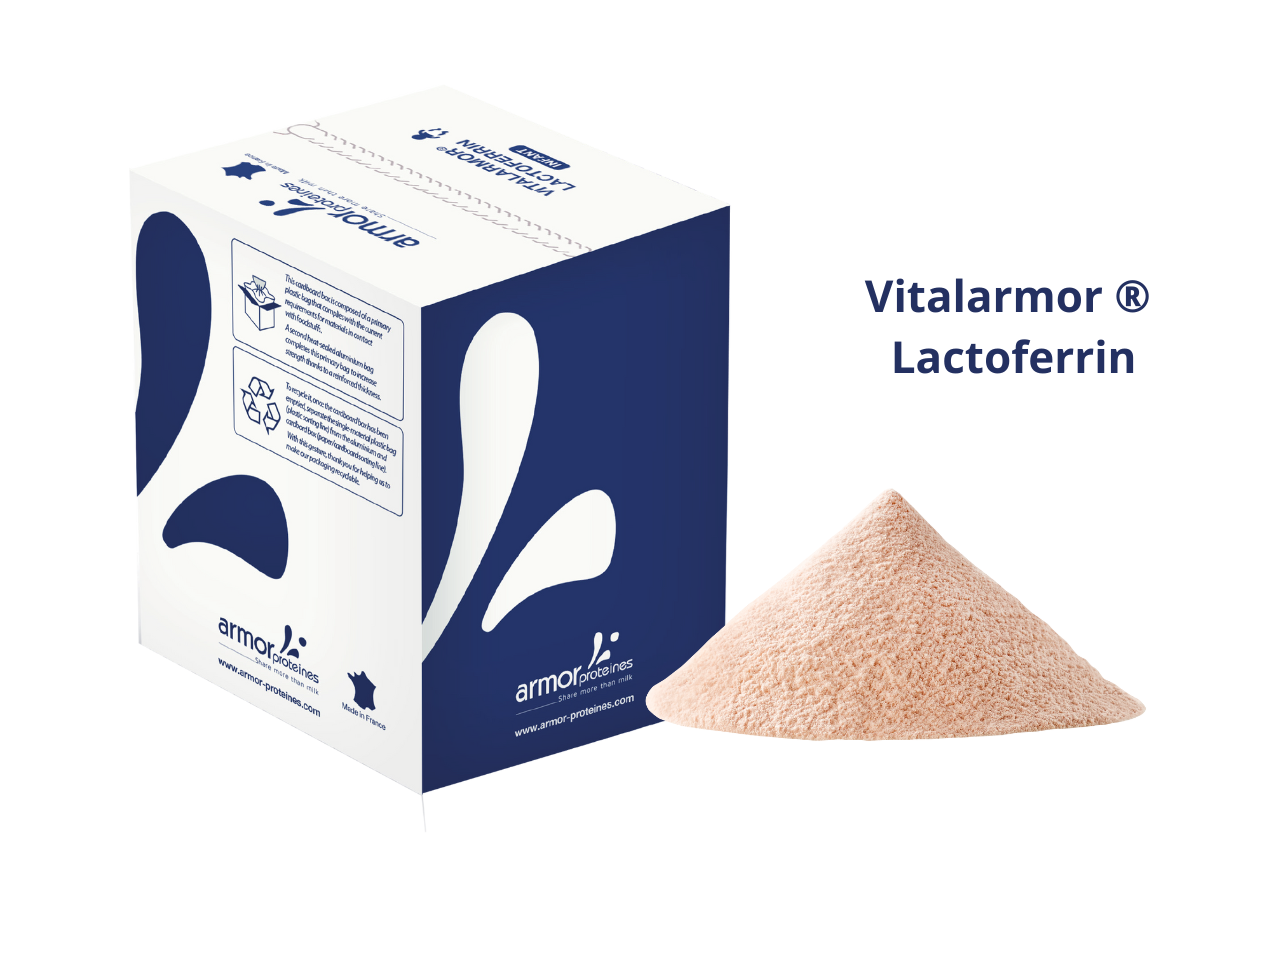 Photo en 3D du pack de Vitalarmor Lactoferrin bleu foncé avec à côté la poudre rose de lactoferrine